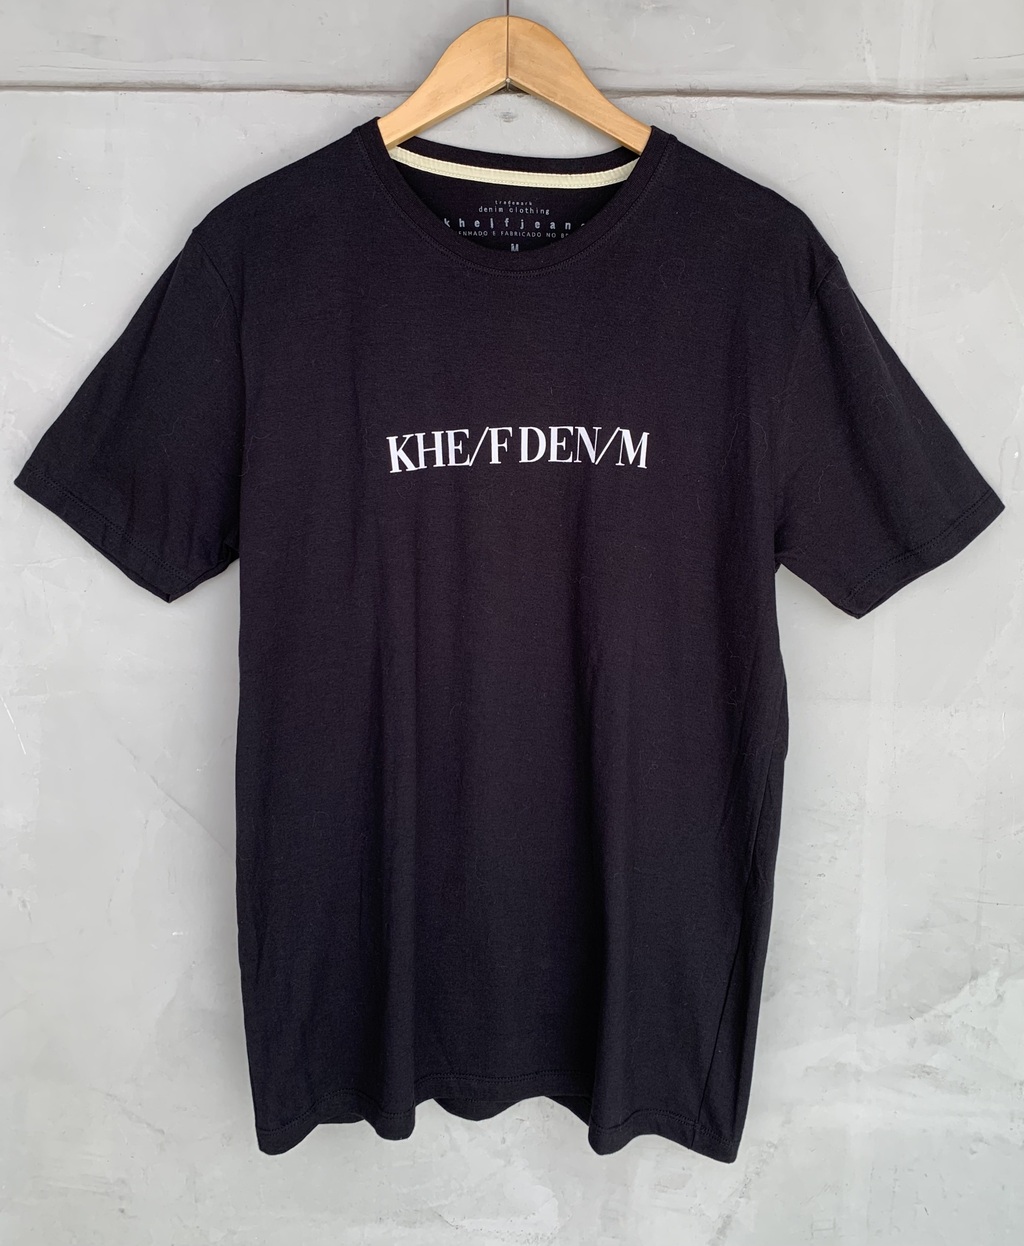 Camiseta Khelf denim - TAM M